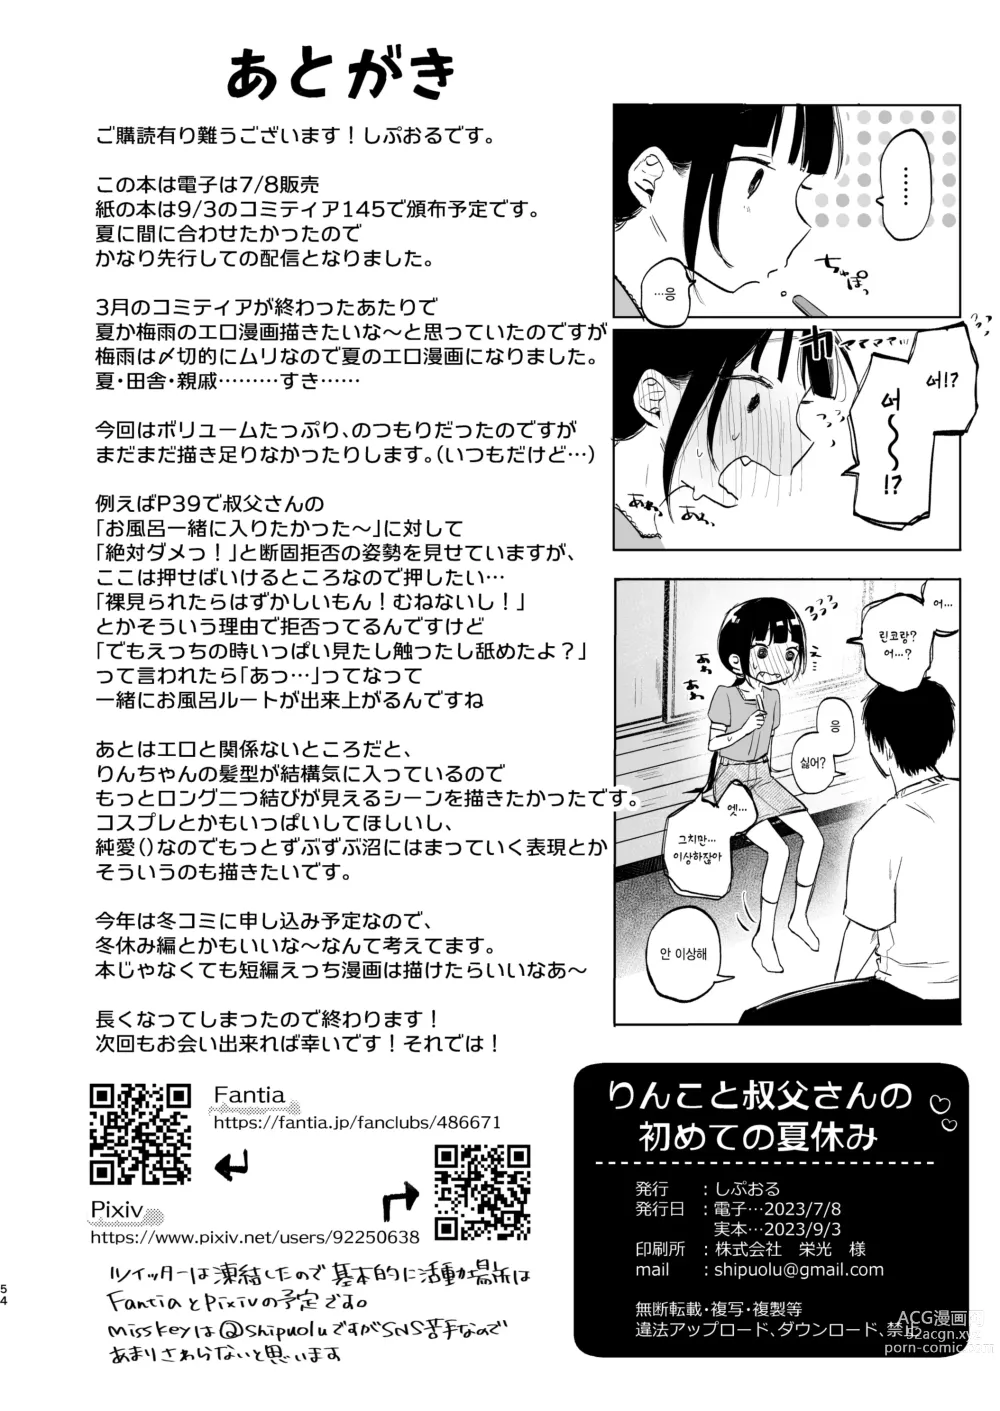 Page 54 of doujinshi 린코와 삼촌의 첫 여름방학